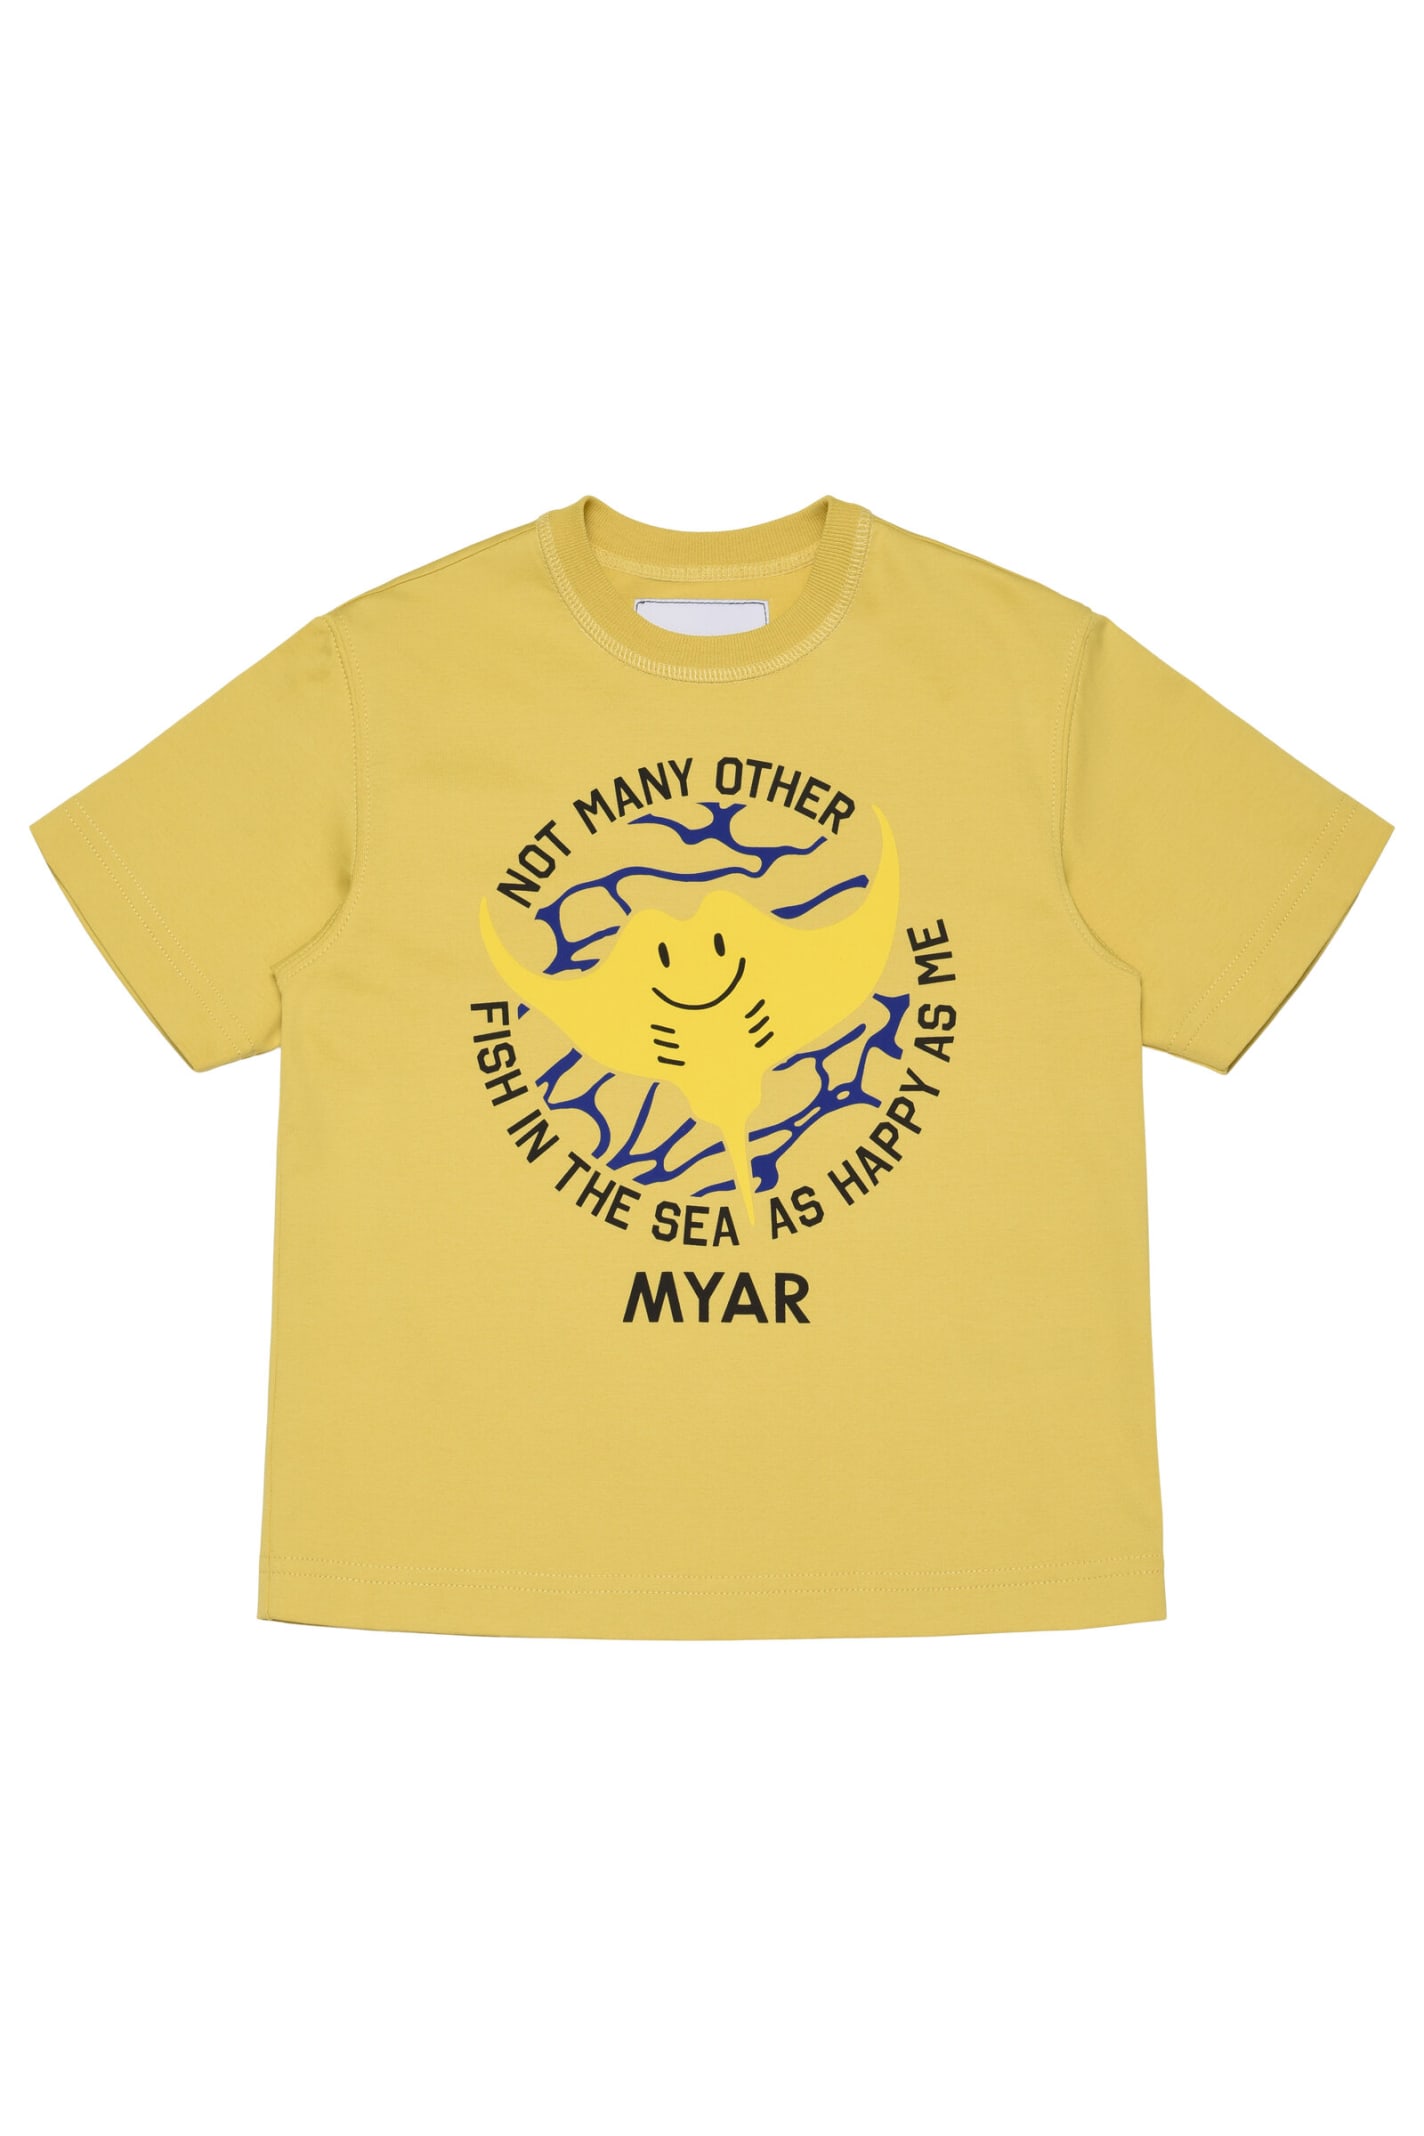 Myt3u T-shirt Myar